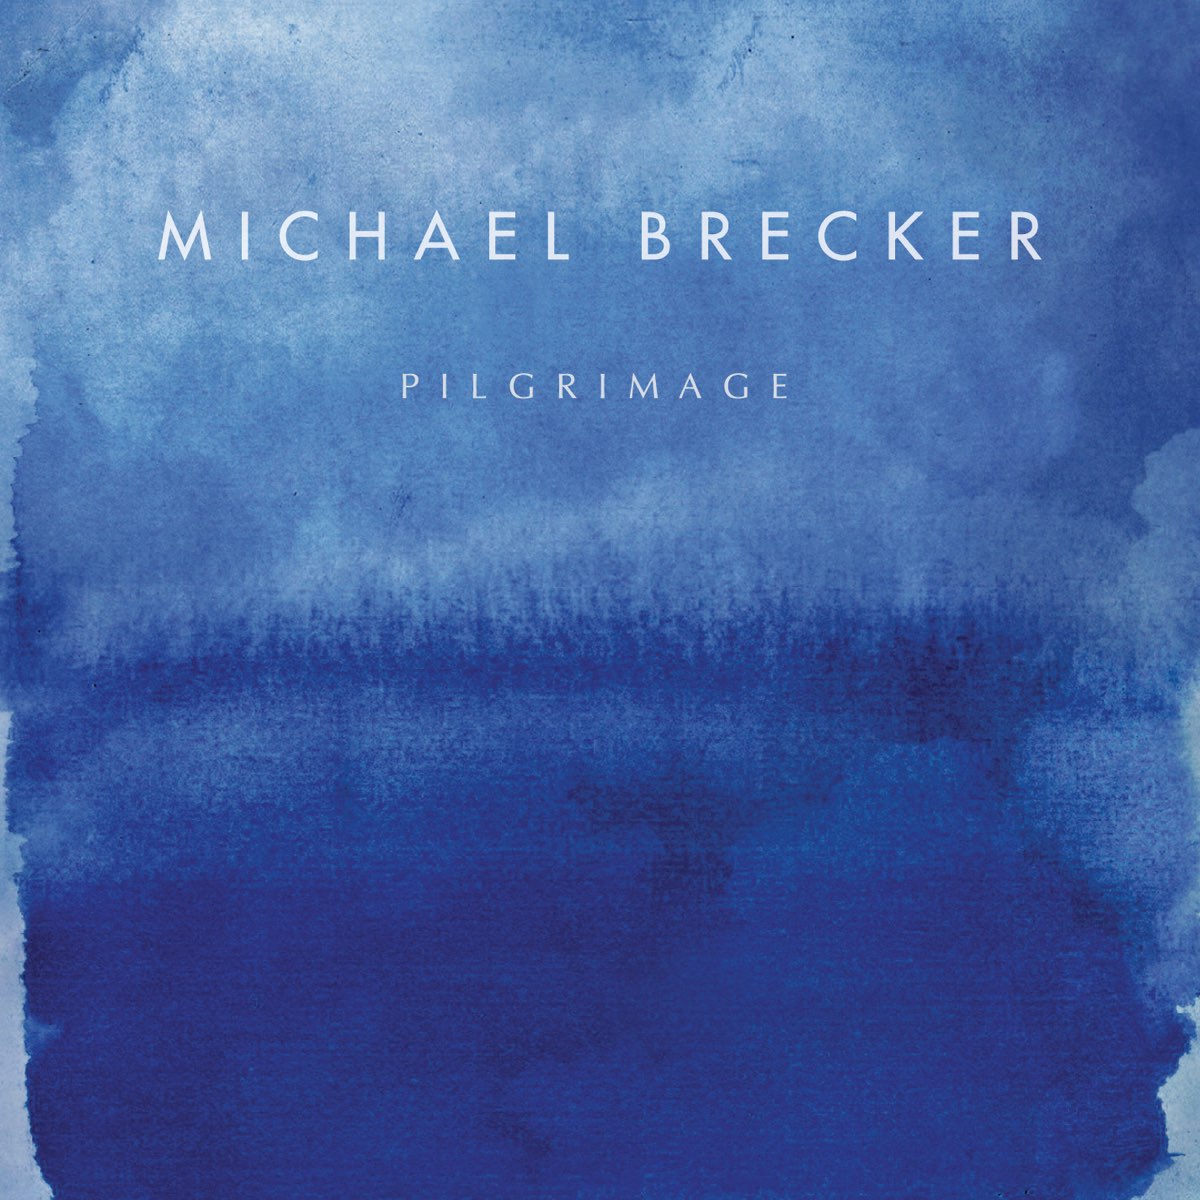 マイケル・ブレッカーの「Pilgrimage」をApple Musicで